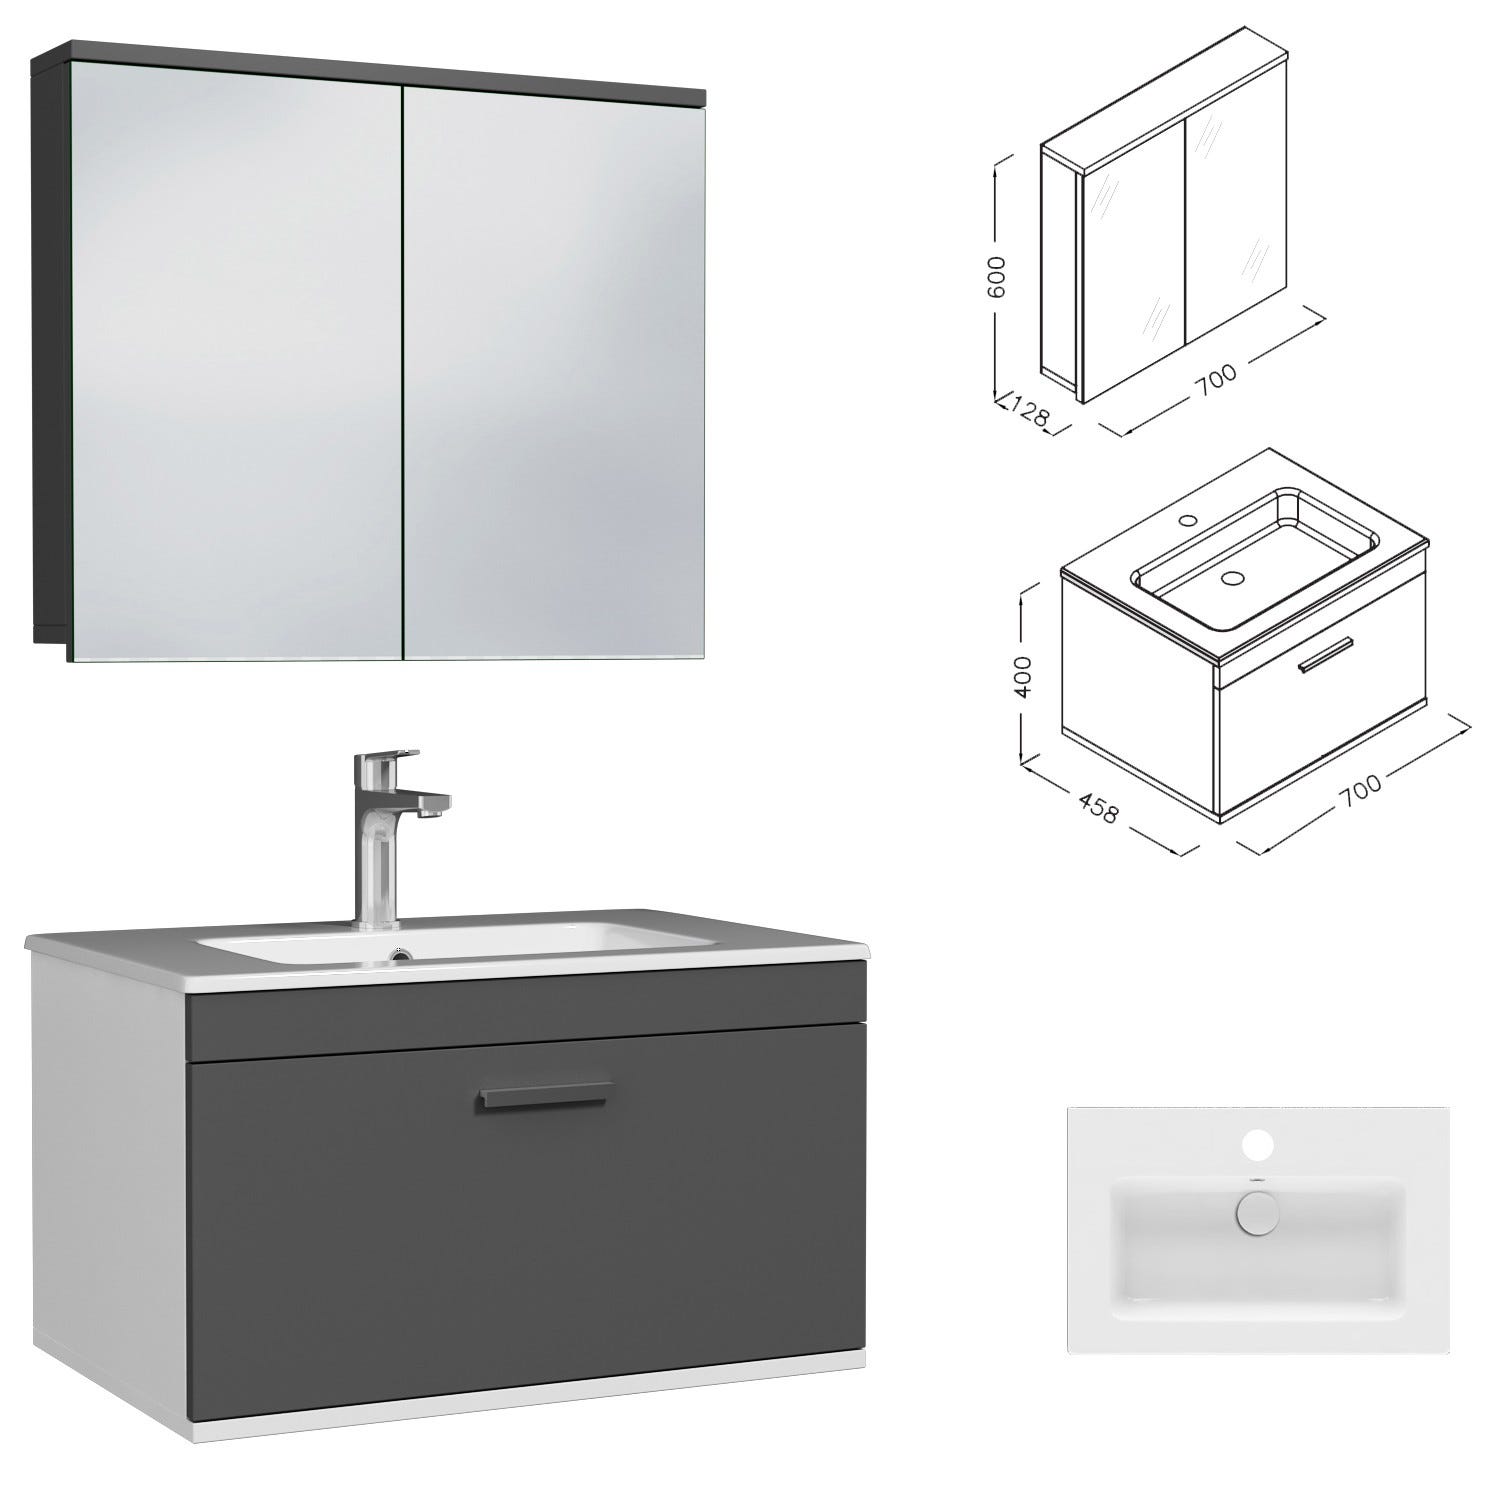 RUBITE Meuble salle de bain simple vasque 1 tiroir gris anthracite largeur 70 cm + miroir armoire 2